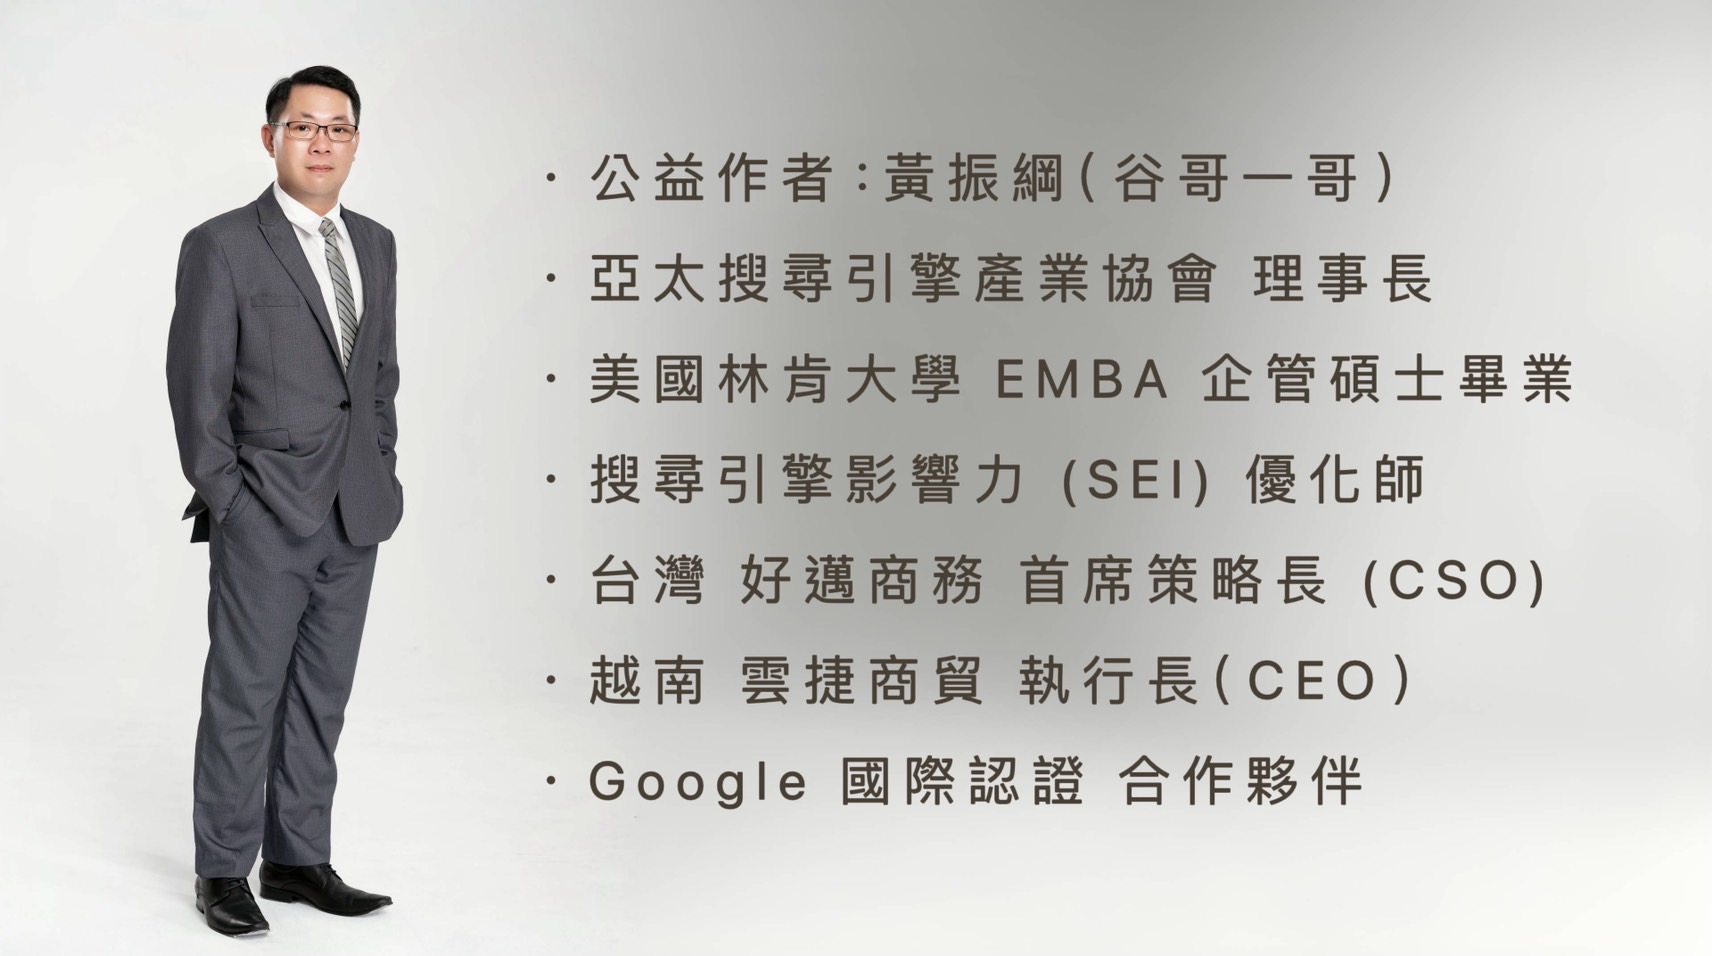 公益作者：黃振綱（谷哥一哥）黃振綱是亞太搜尋引擎產業協會的理事長，擁有美國林肯大學企管碩士學位，是搜尋引擎影響力（SEI）的優化師。他同時擔任台灣好邁商務的首席策略長（CSO）以及越南雲捷商貿的執行長（CEO）。此外，他也是Google國際認證的合作夥伴。